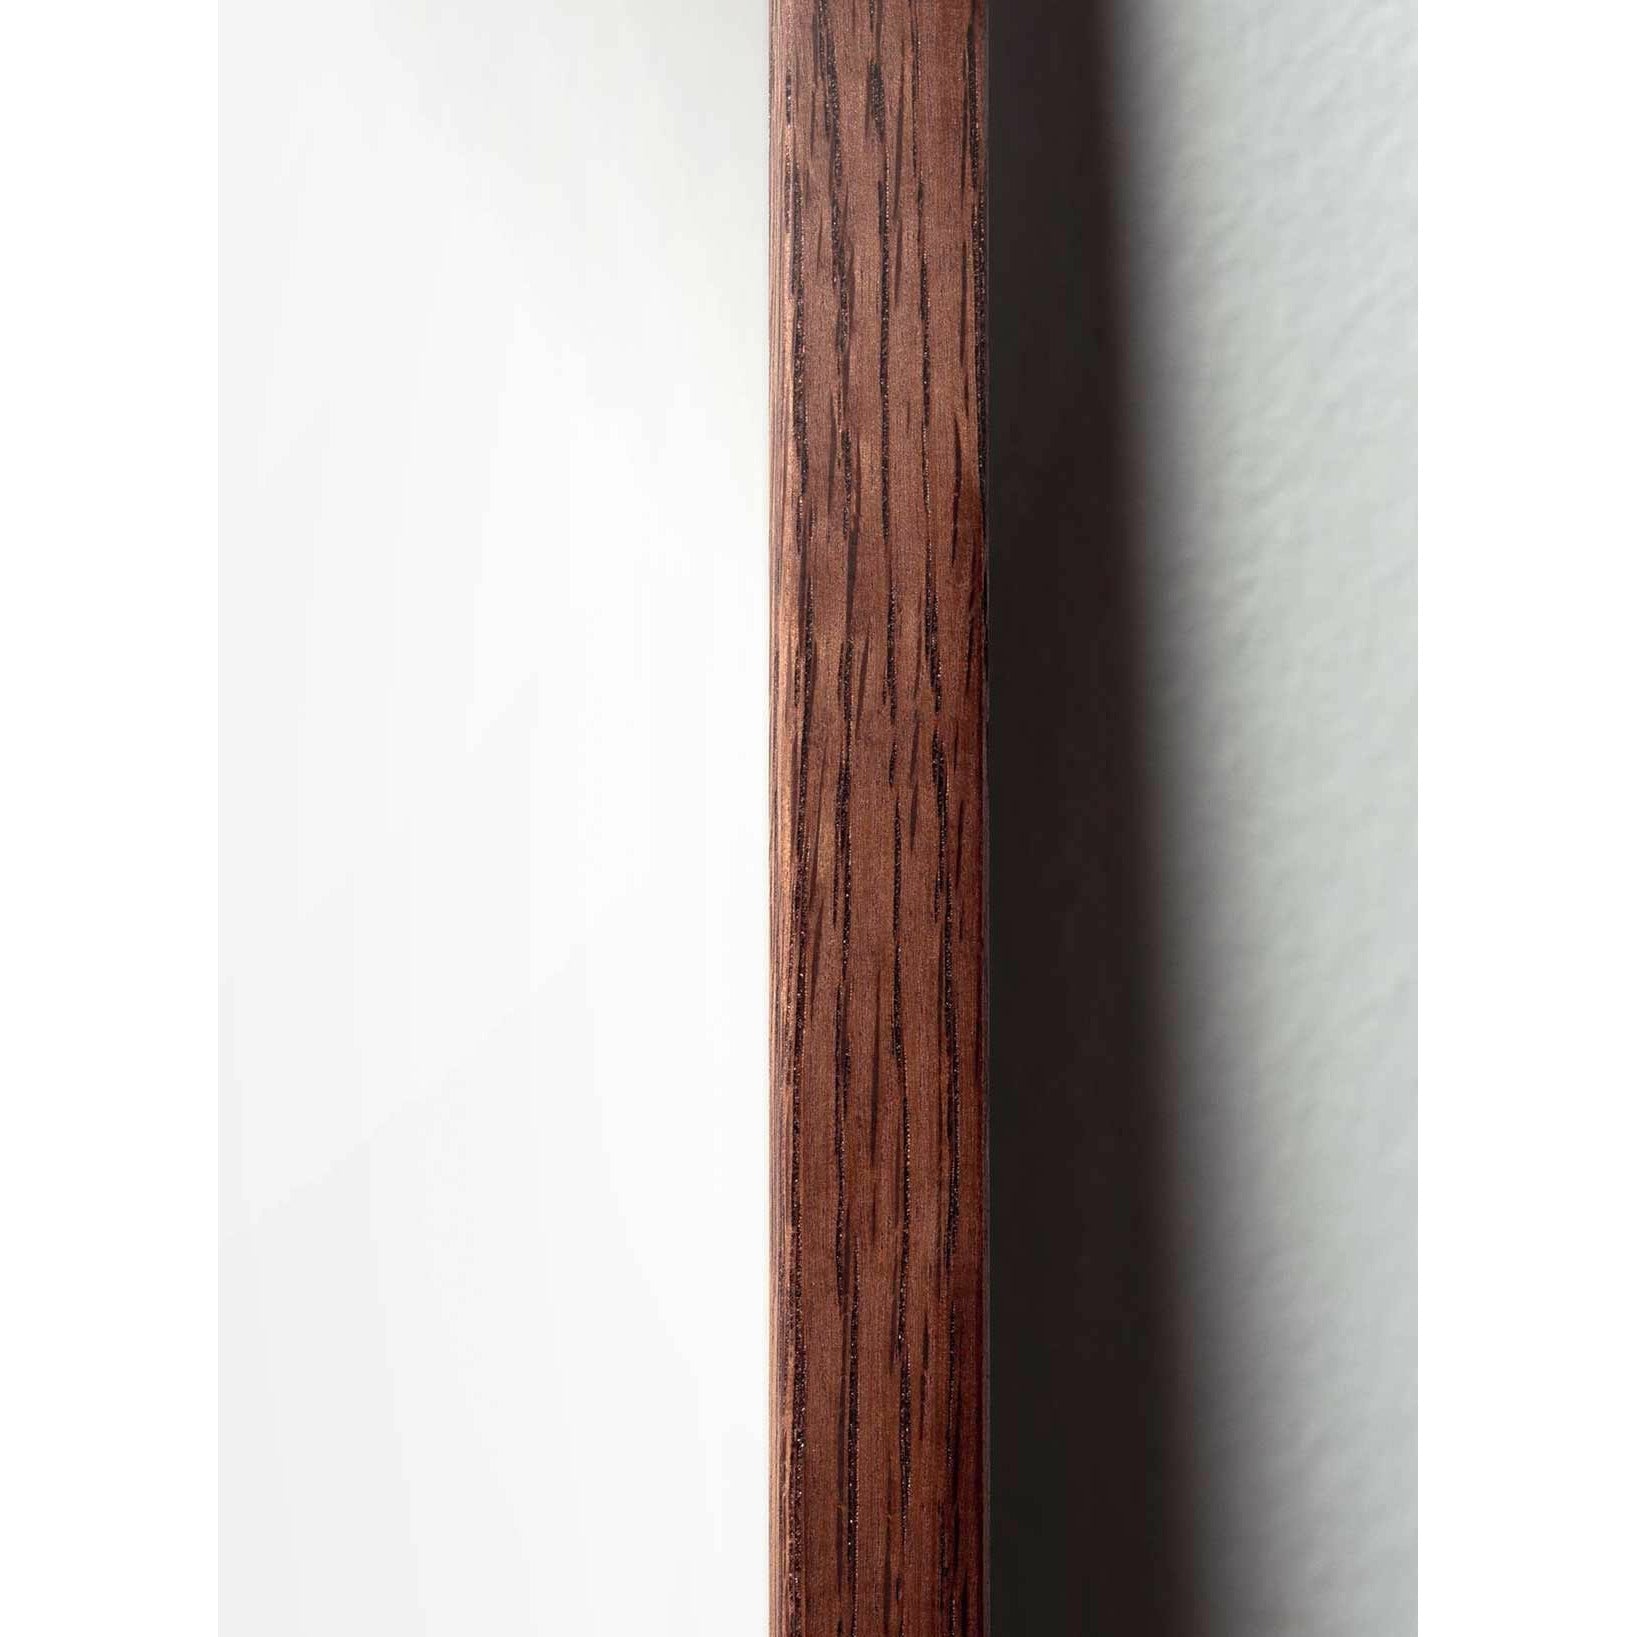 Póster de formato de cruce de huevo de creación, marco hecho de madera oscura A5, marrón